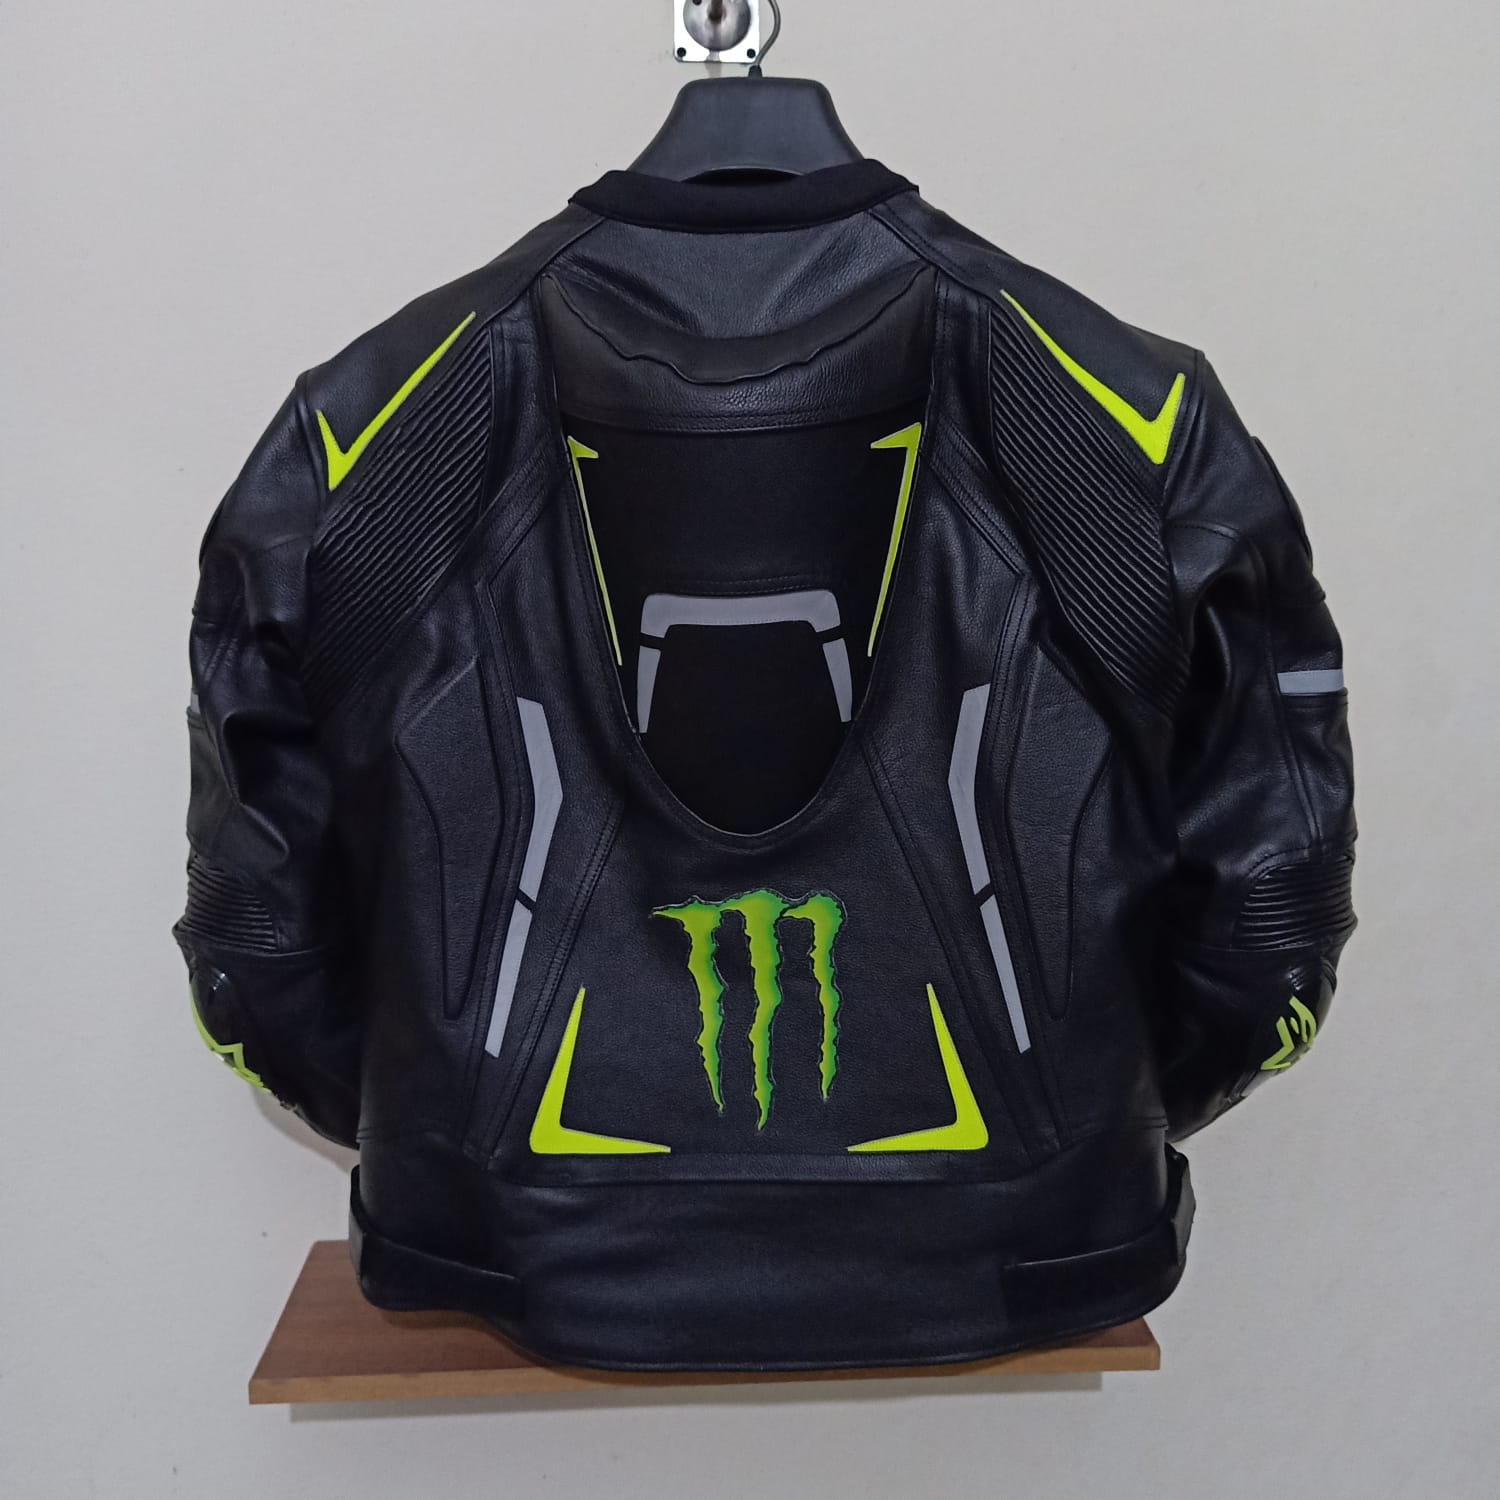 Black Neon Yellow Monster Energy Motorbike Jacket Motorcycle Leather Racing Jacket Back